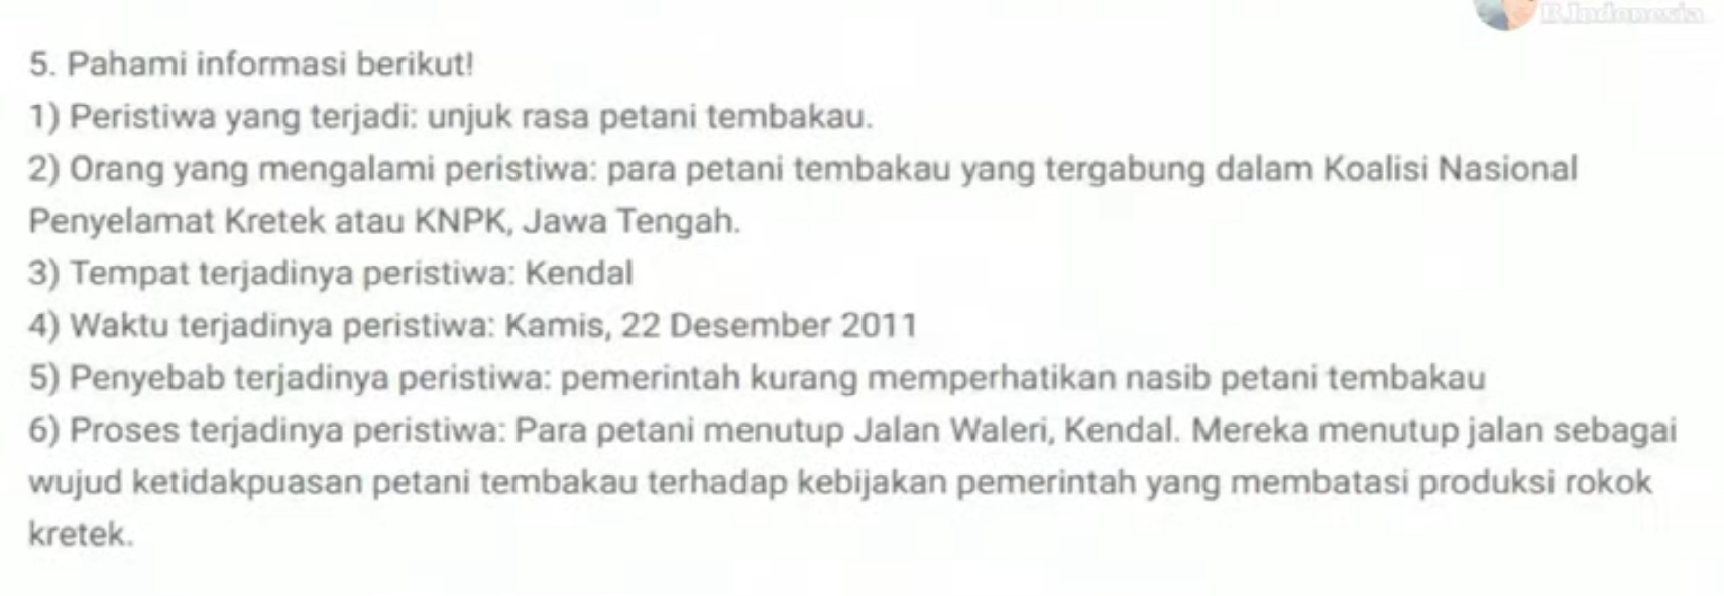 Soal UTS PTS Bahasa Indonesia Kelas 8 K13 2021